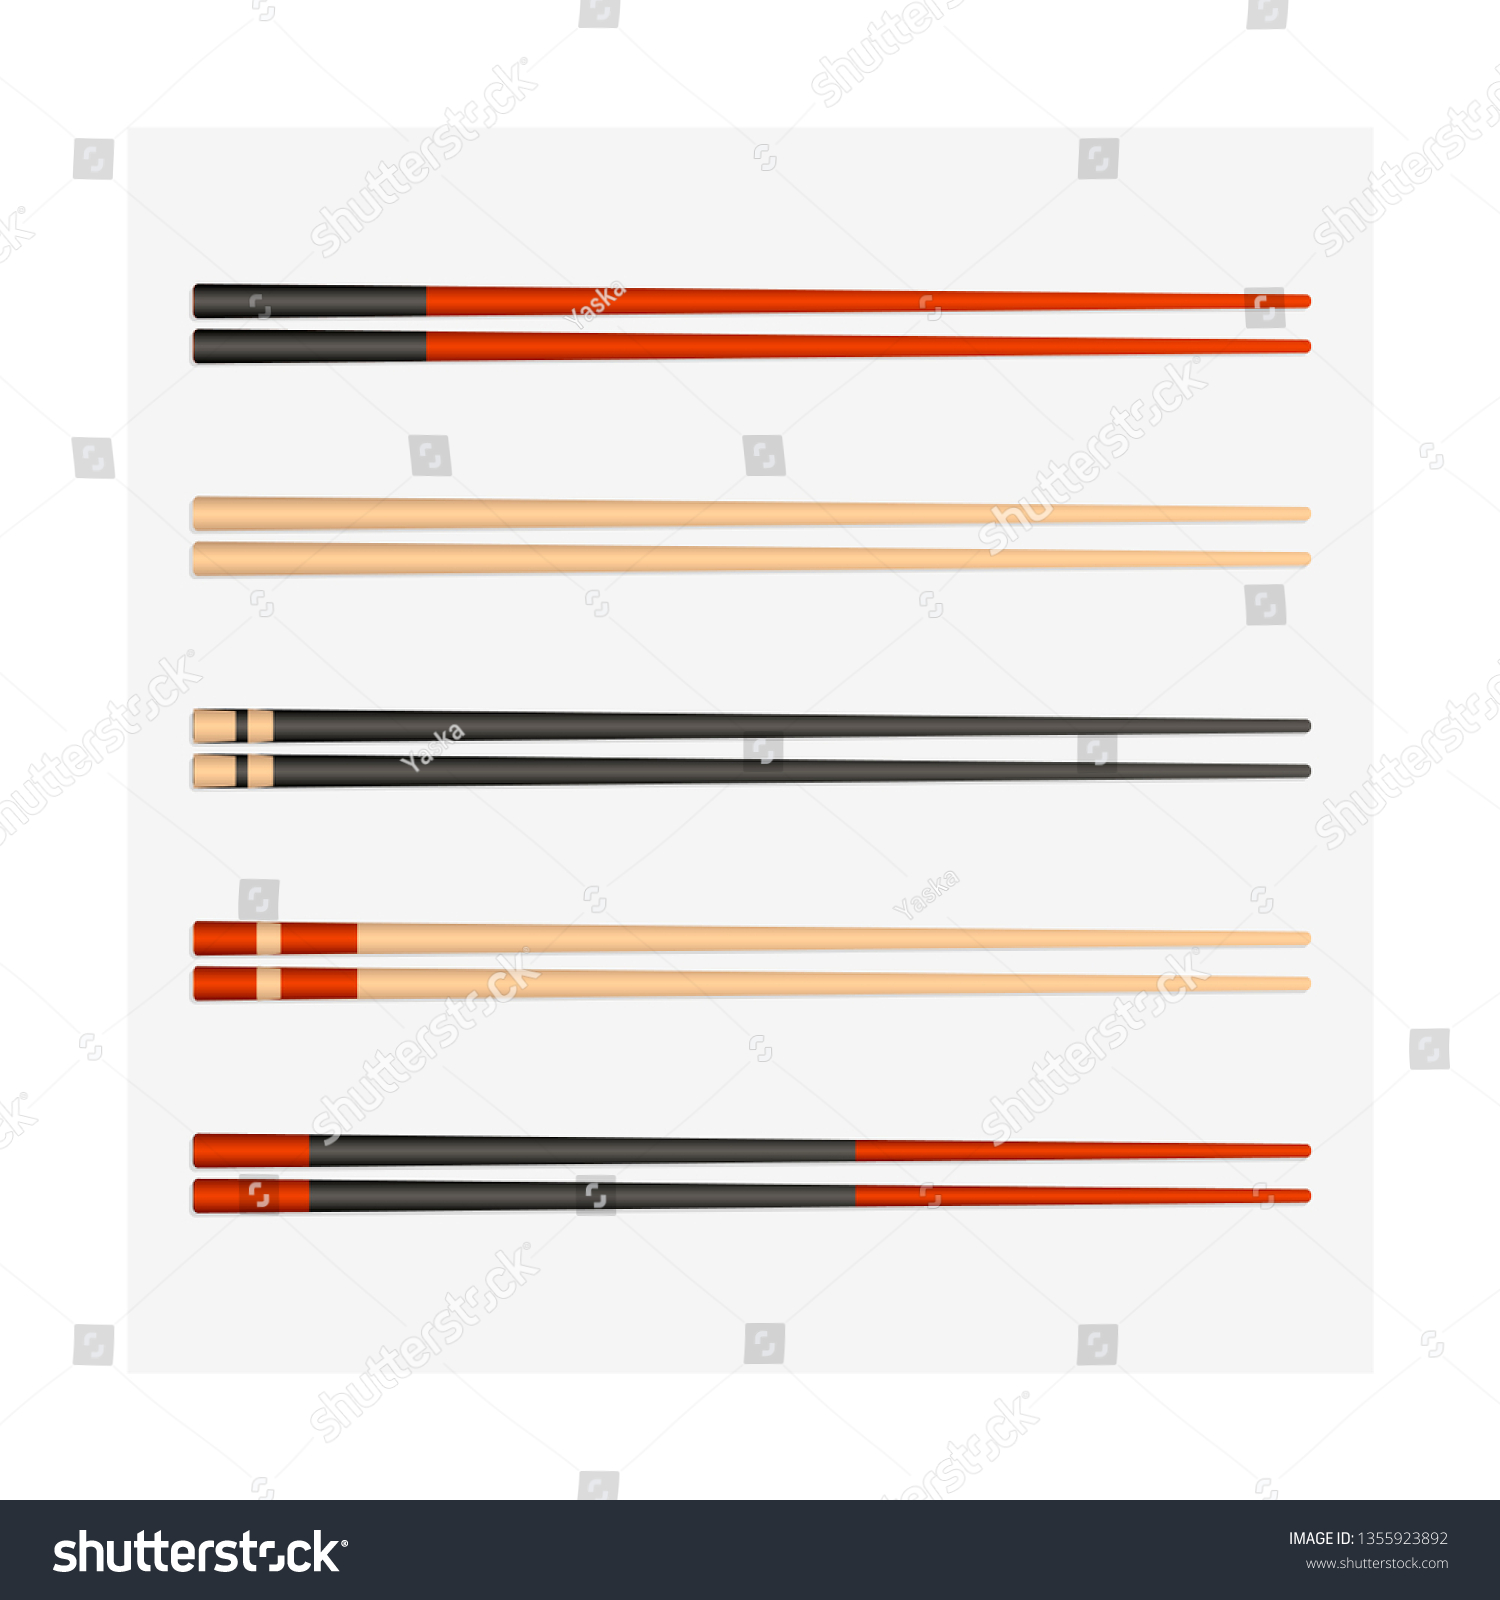 different chopsticks